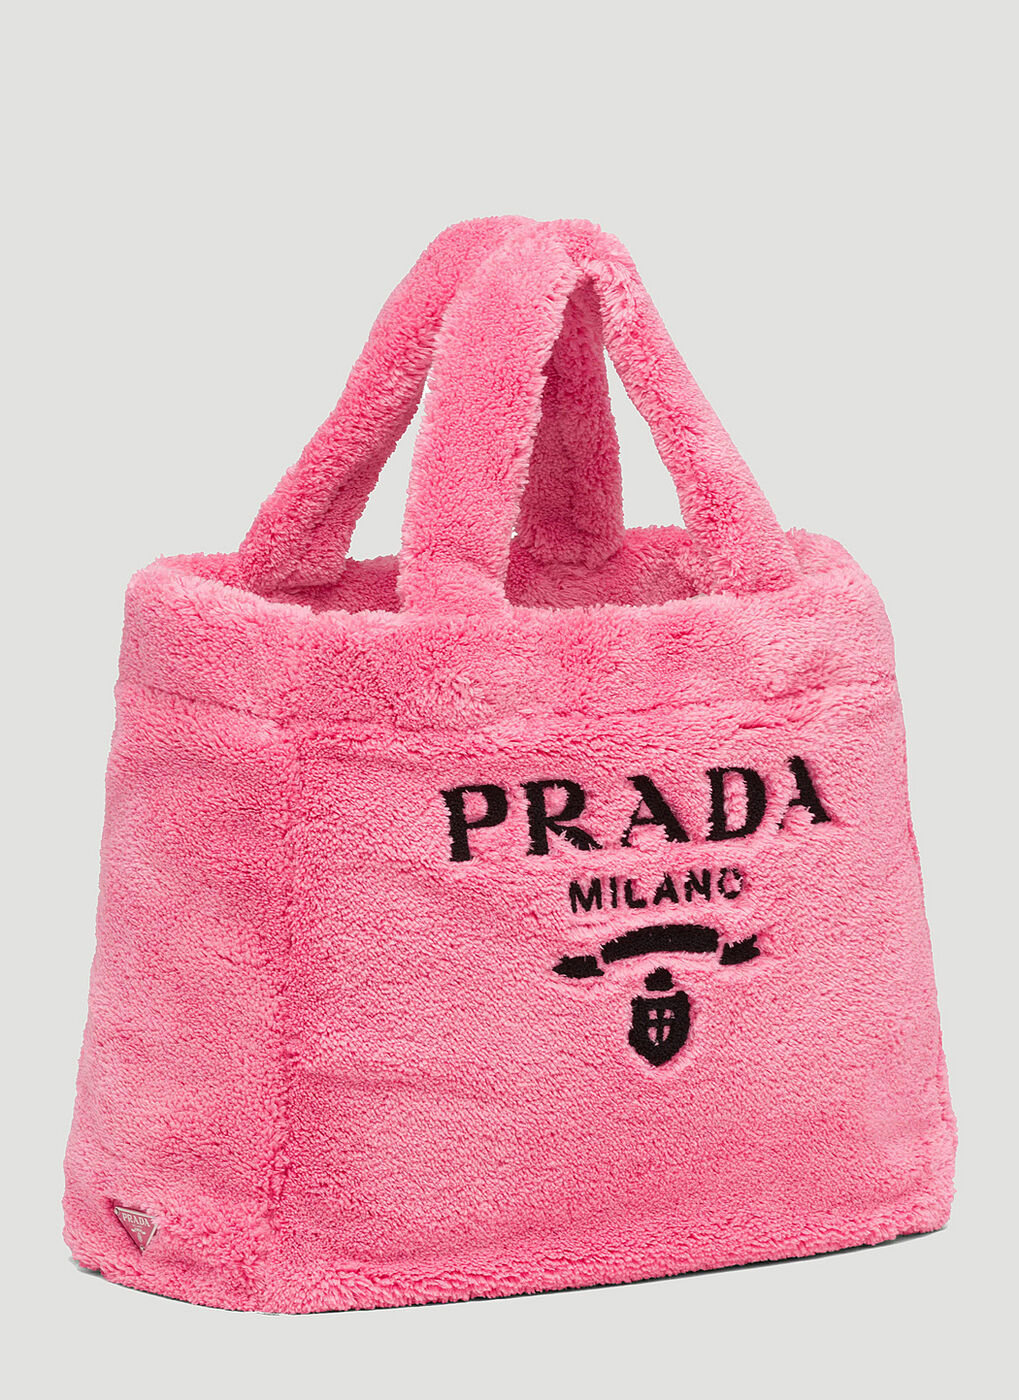 Terry Tote Bag in Pink Prada